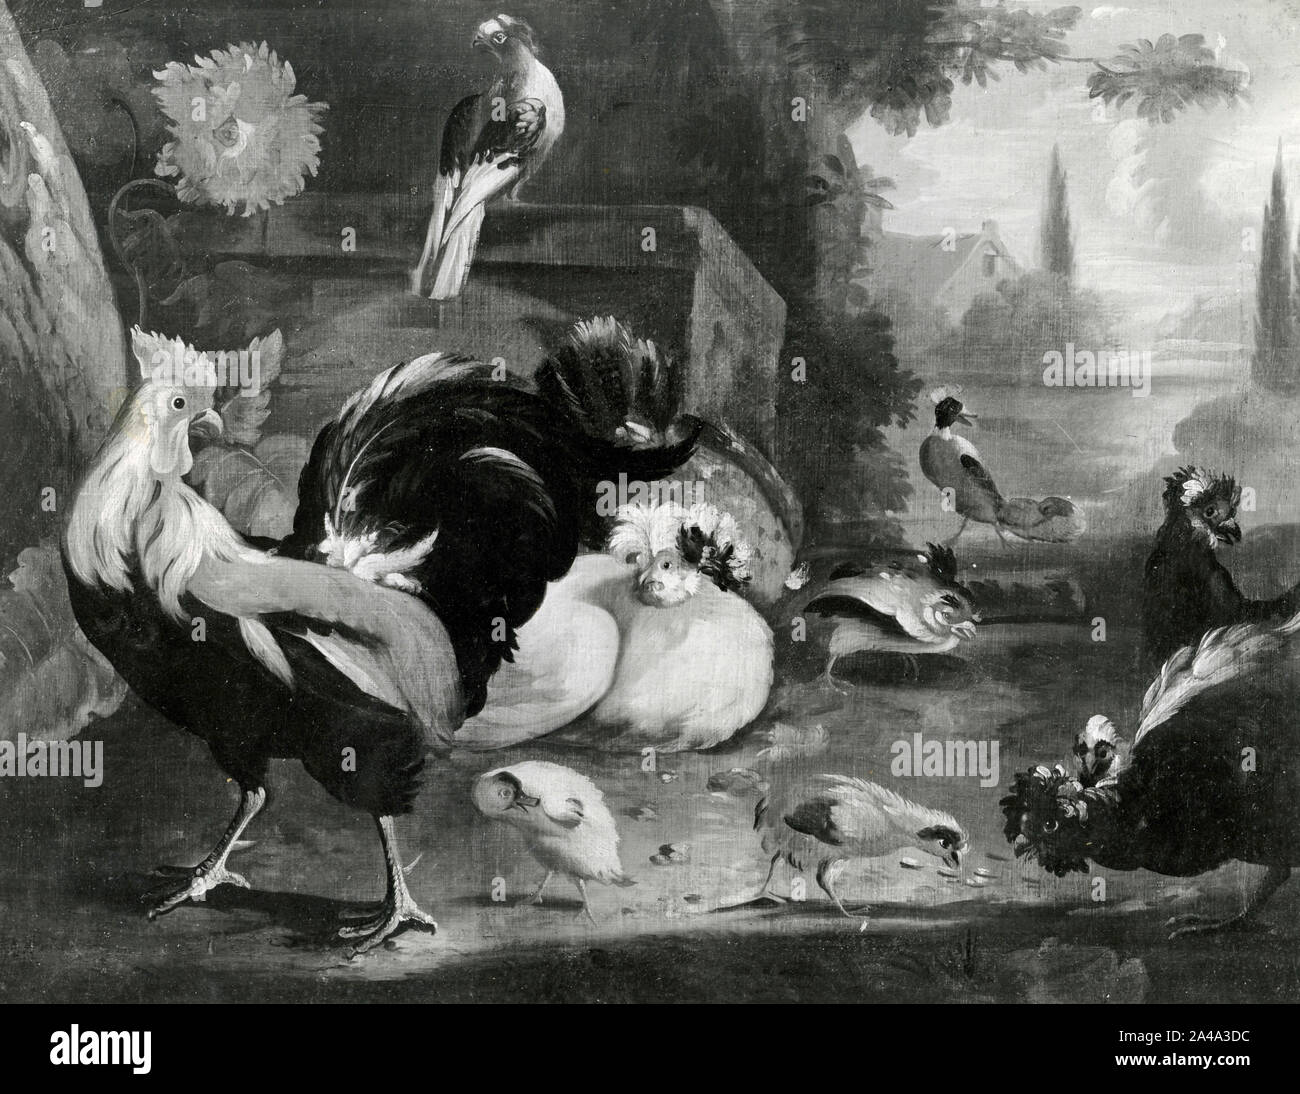 Les oiseaux, peinture de l'artiste flamand Nicasius Bernaerts, 1930 Banque D'Images